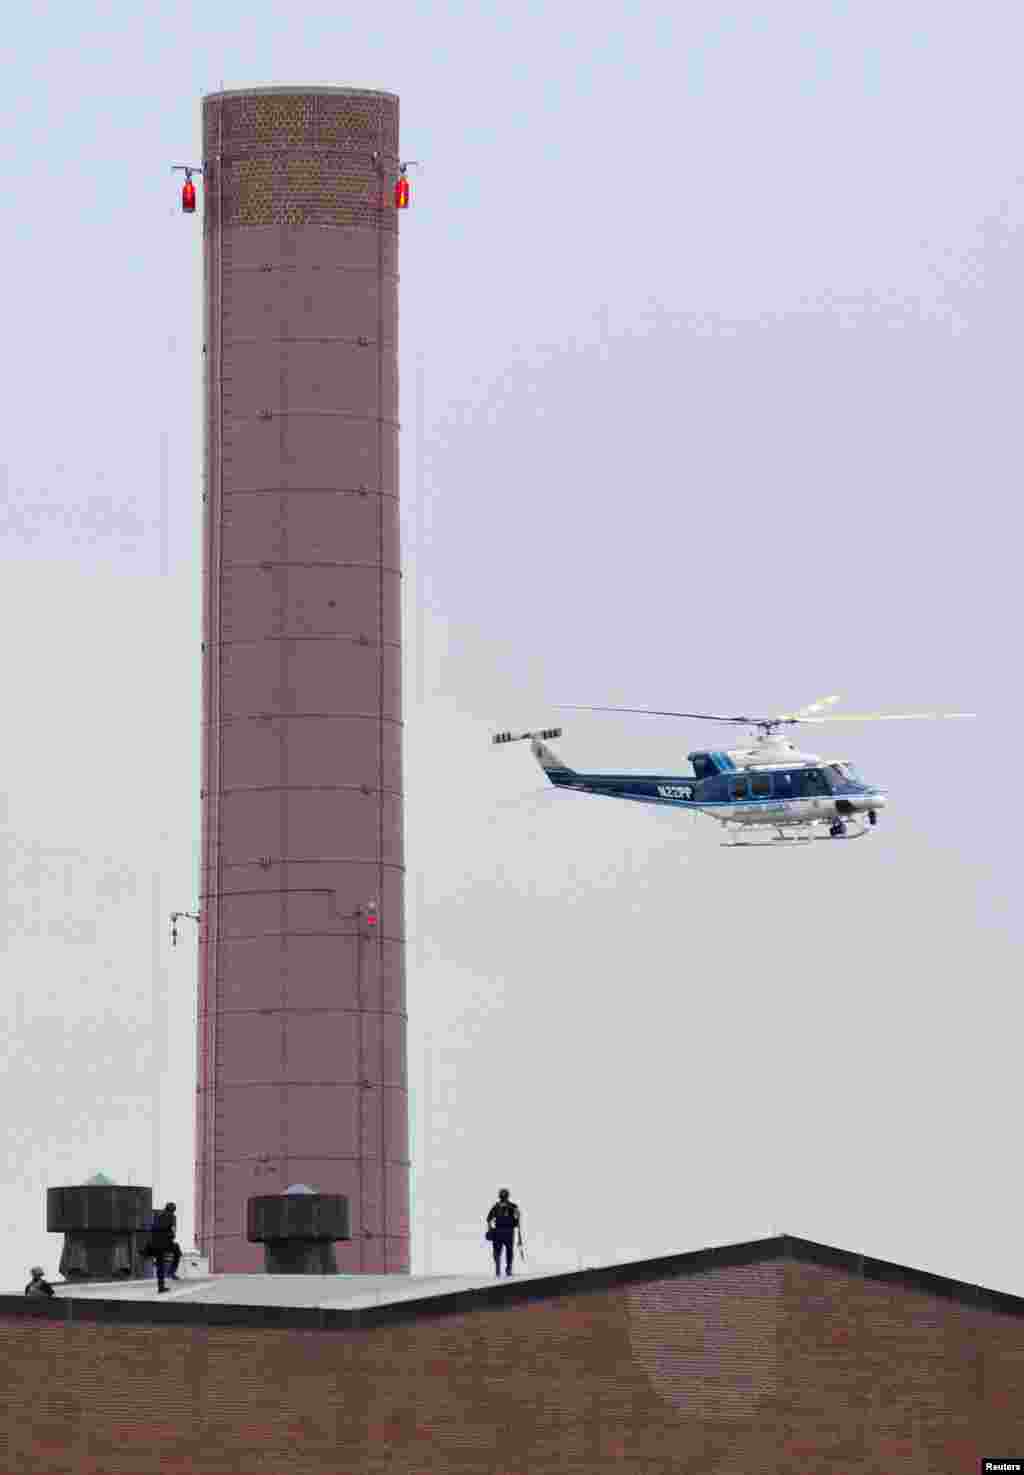 Trực thăng và cảnh sát tuần tra trên mái một tòa nhà sau khi vụ nổ súng xảy ra tại Công xưởng Hải quân ở thủ đô Washington, ngày 16 tháng 9, 2013.